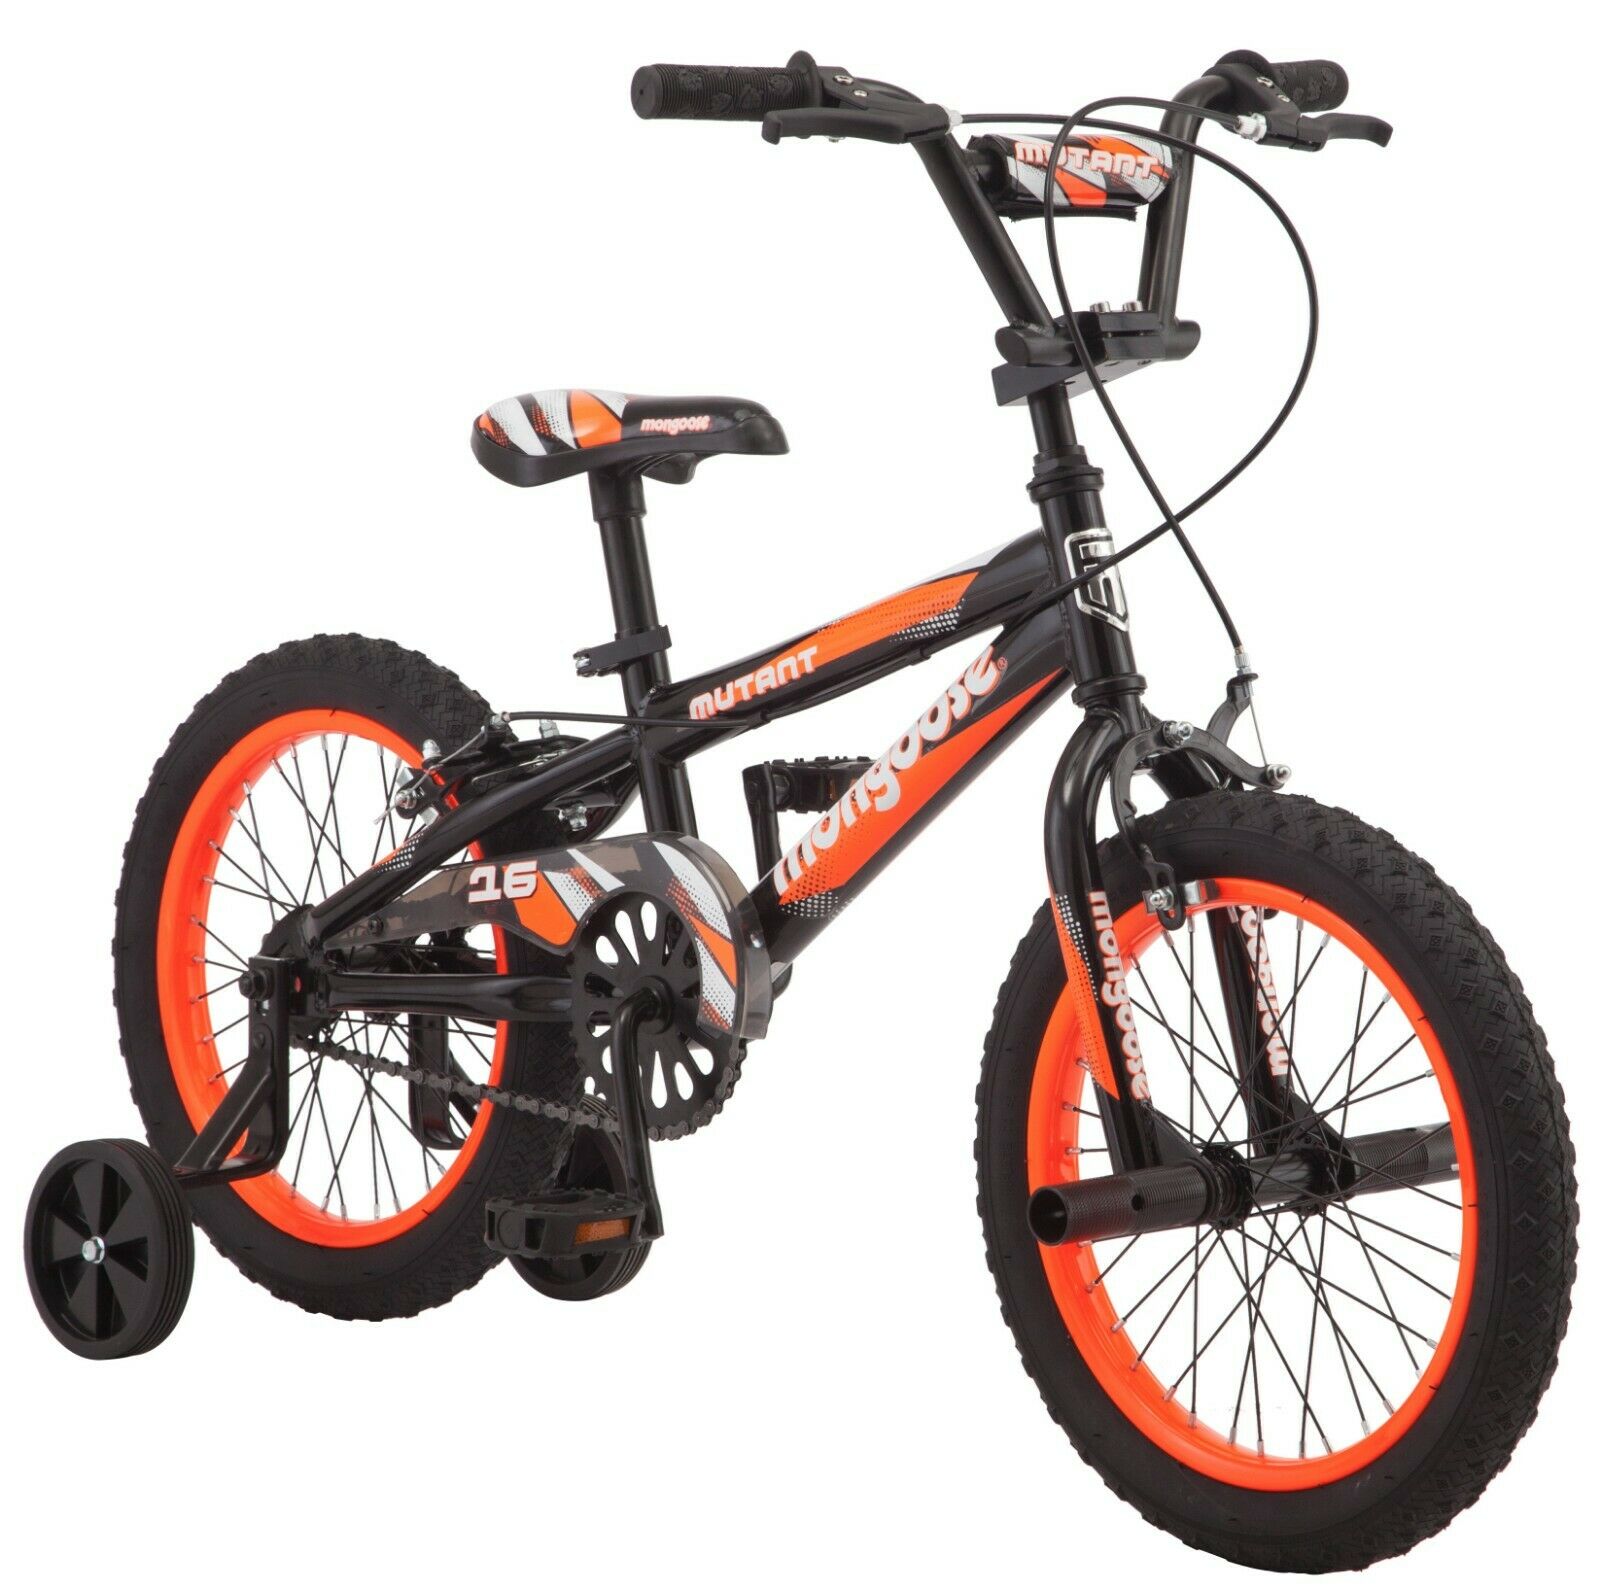 16″ Mongoose Mutant Boys’ Bicycle, Black & Orange Mongoose Bikes